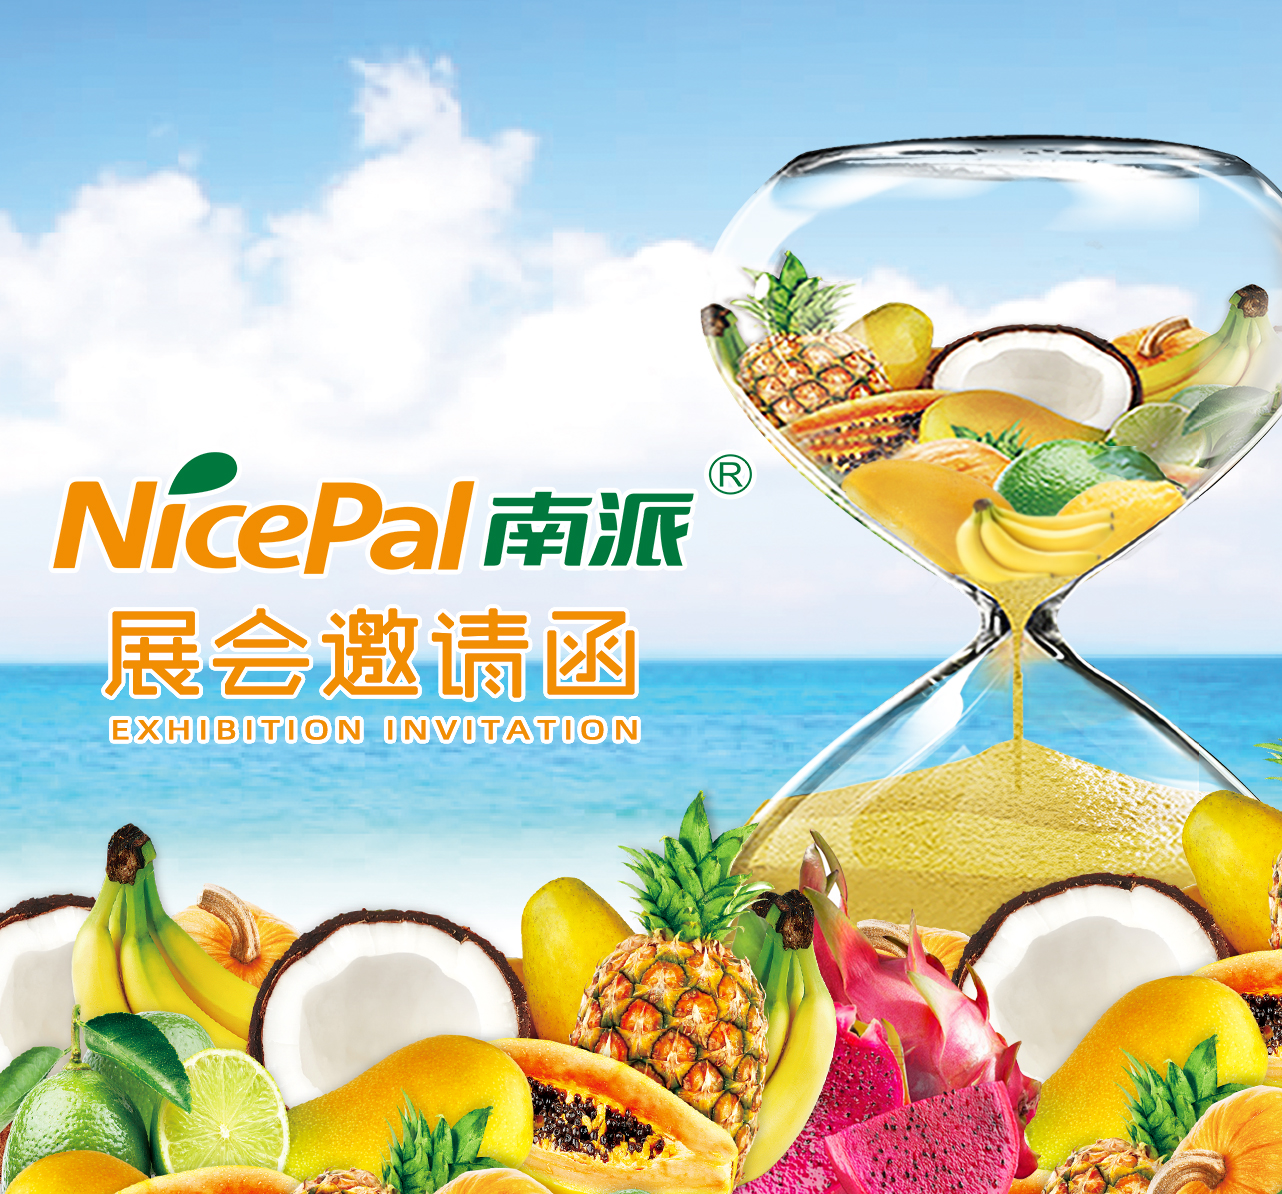 海南南派诚邀您参加第三十届上海国际酒店及餐饮业博览会